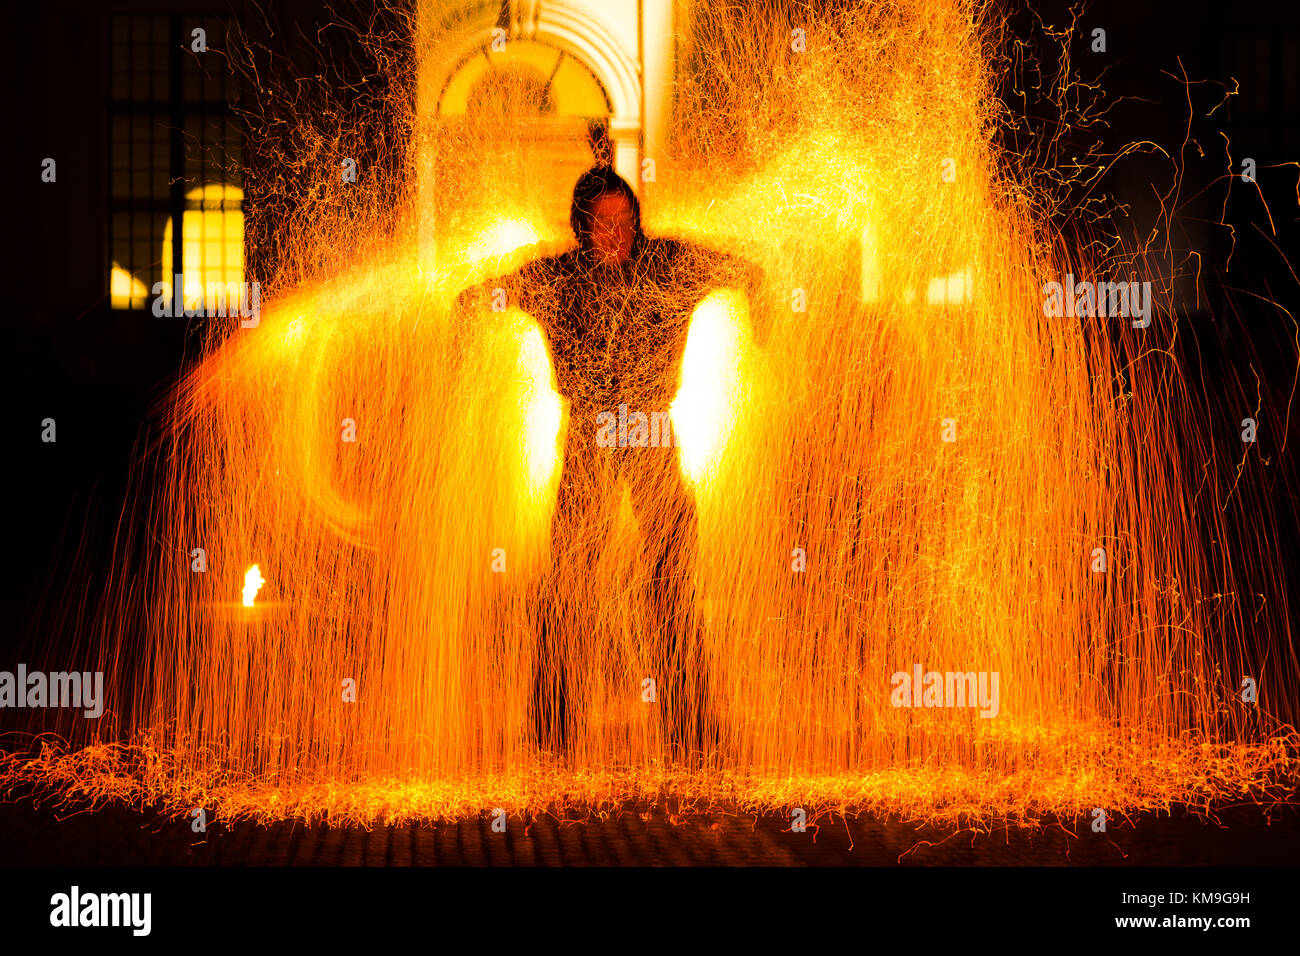 Mann in Flammen - Feuer - Feuer Kunst - Brand Performance Stockfoto